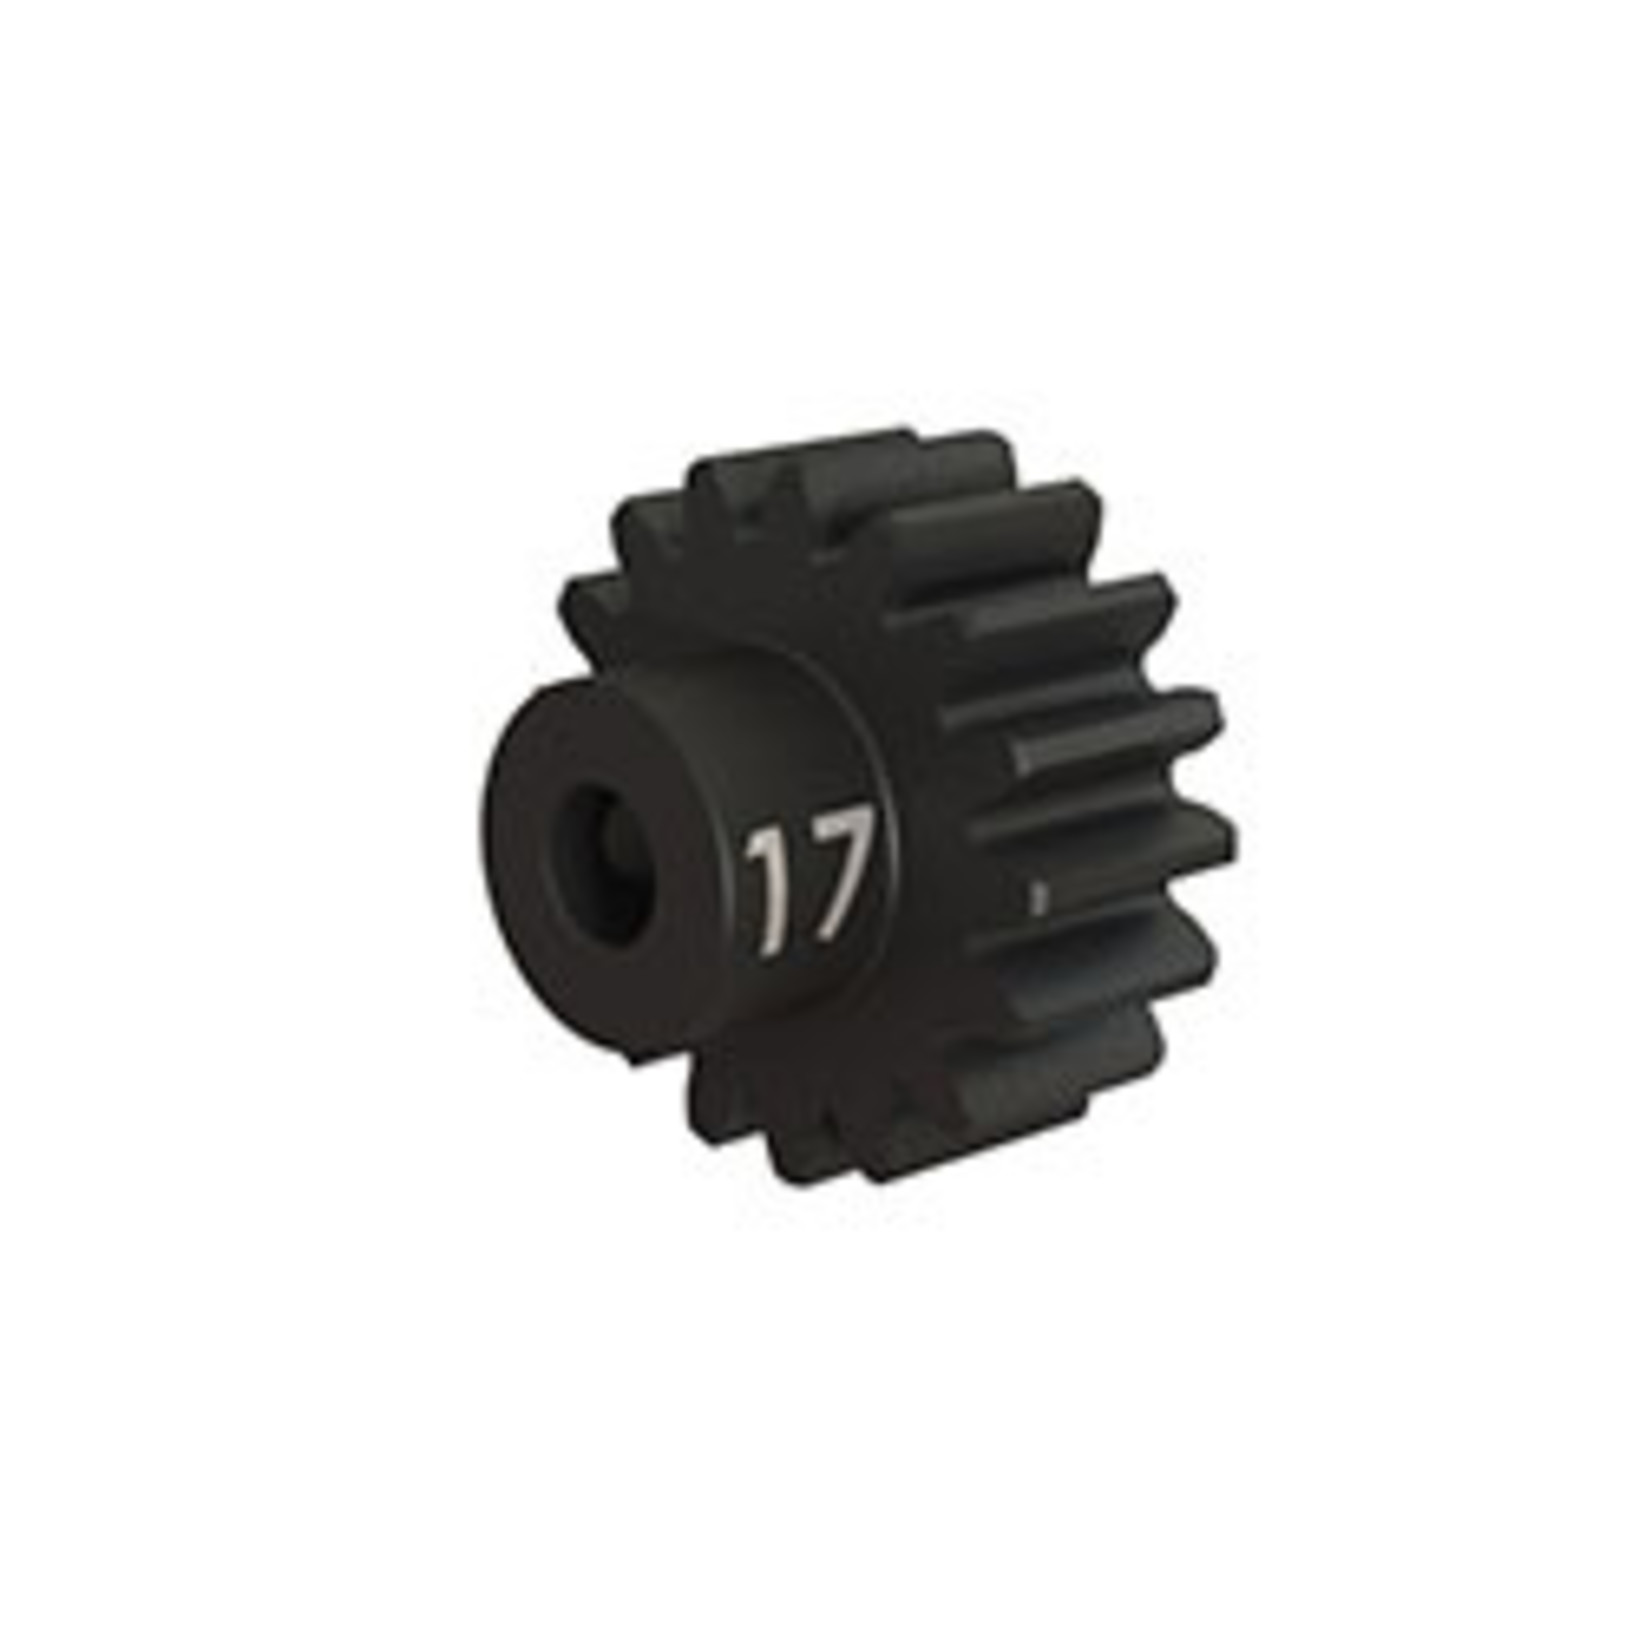 Traxxas 3947X   Gear, 17-T pinion (32-p), heavy duty (machined, hardened steel) (fits 3mm shaft)/ set screw